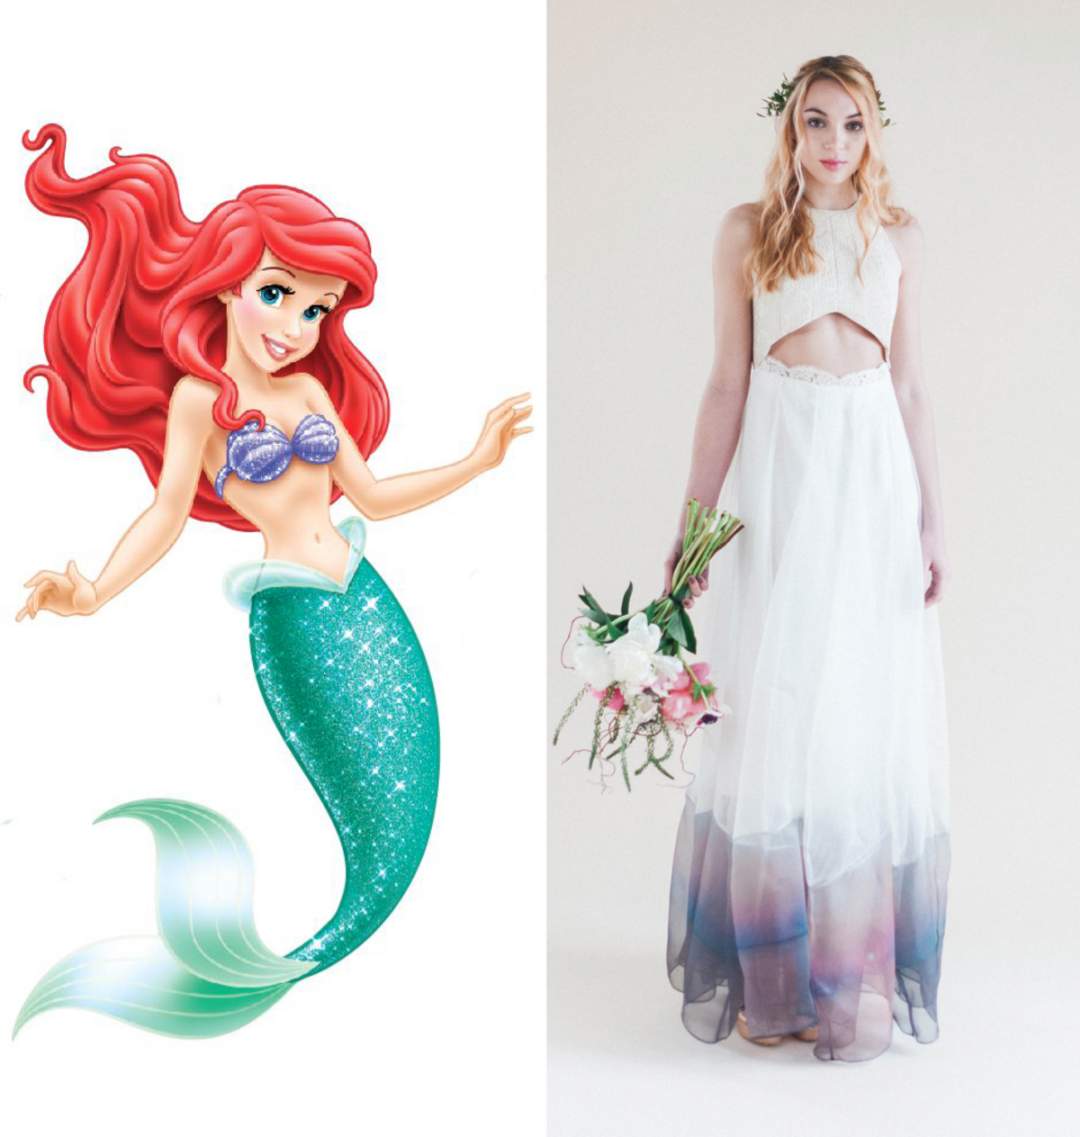  fashion designer Zuhair Murad designed mermaid dress for  Jennifer Lopez 